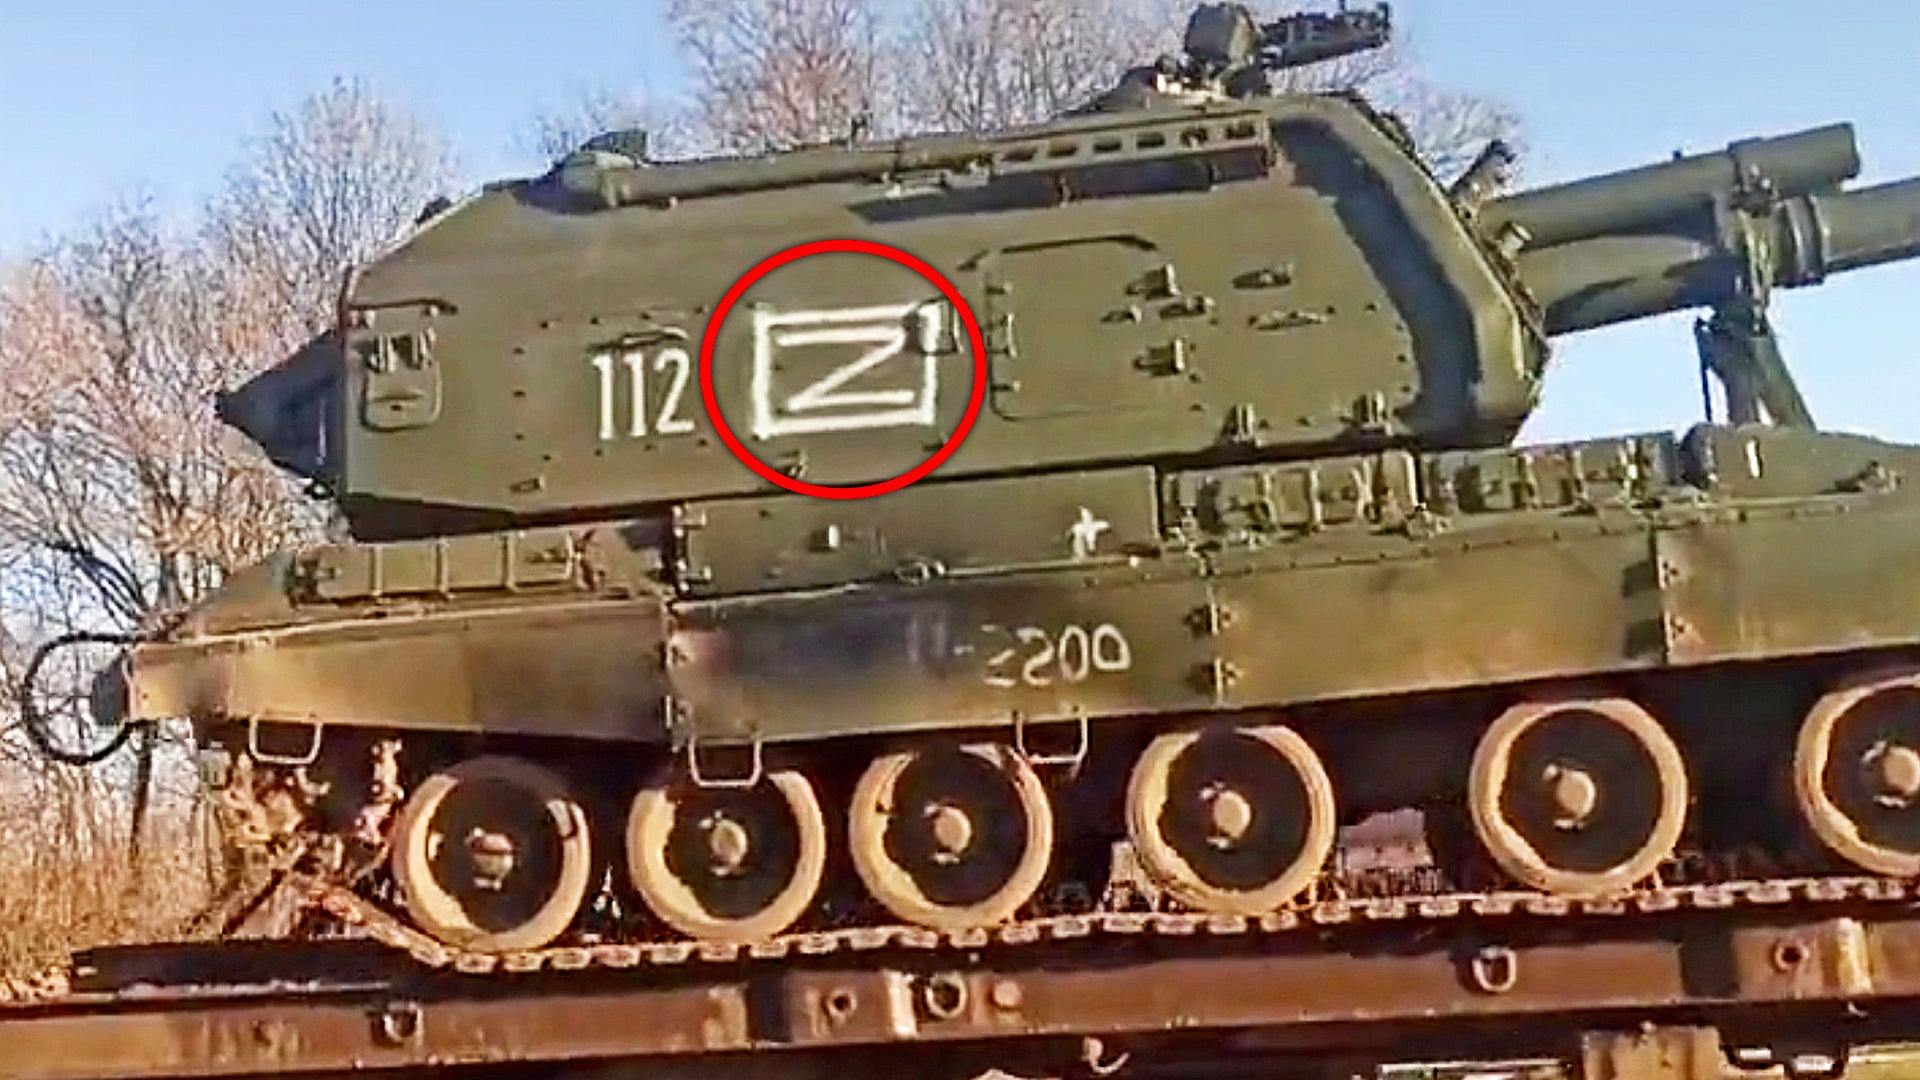 Rus askeri araçları üzerinde neden Z harfi var, anlamı ne? Z işareti ne anlama geliyor?